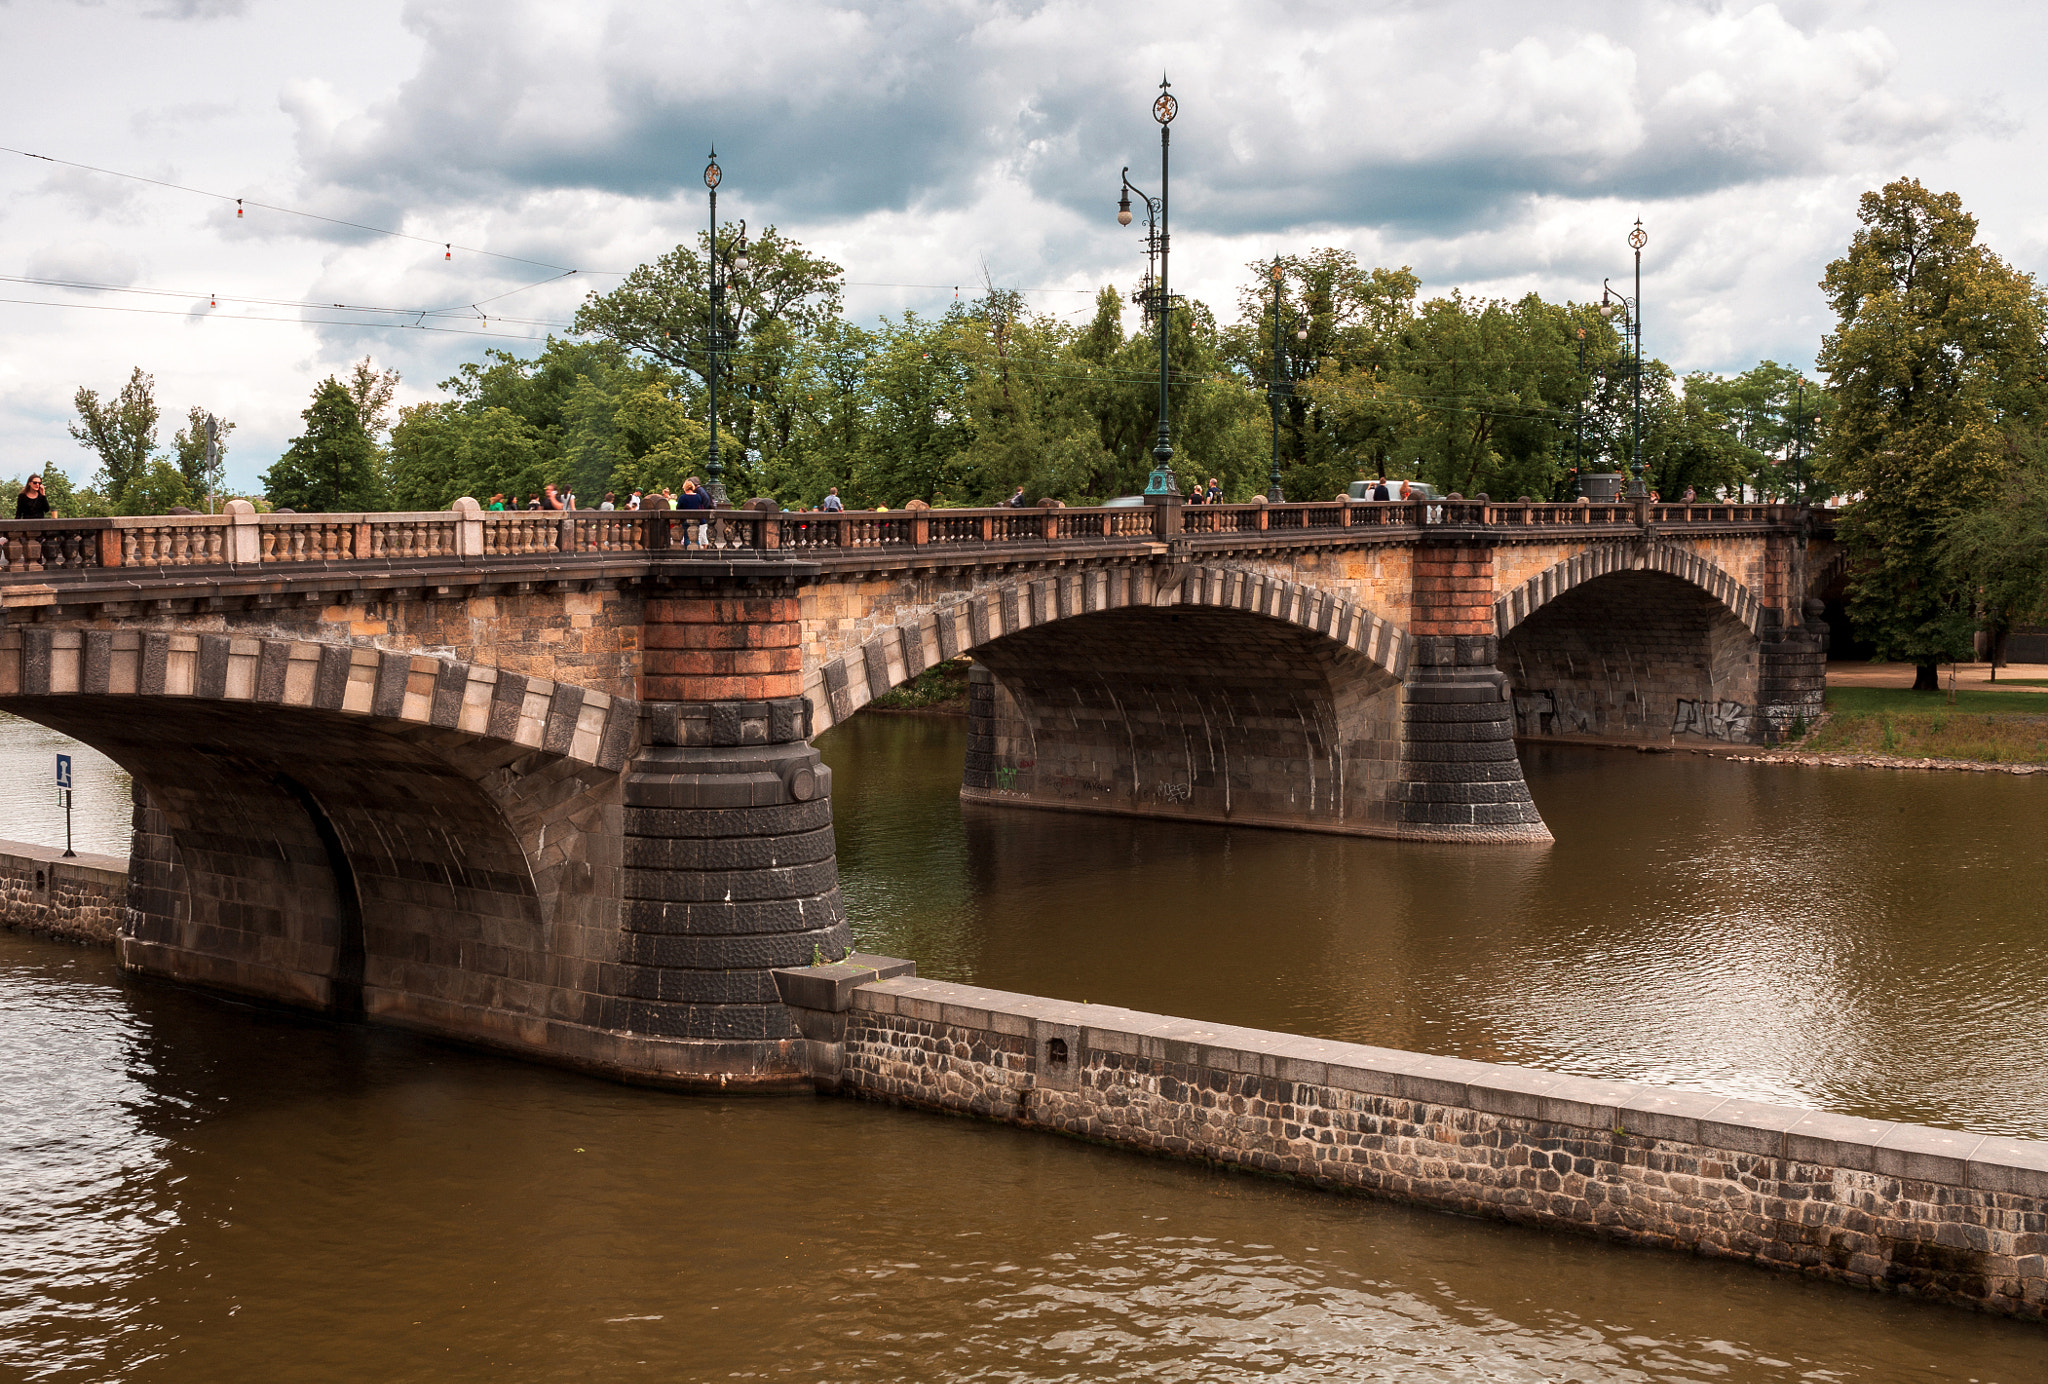 Canon EOS 5D + ZEISS Distagon T* 35mm F2 sample photo. Prague bridges photography